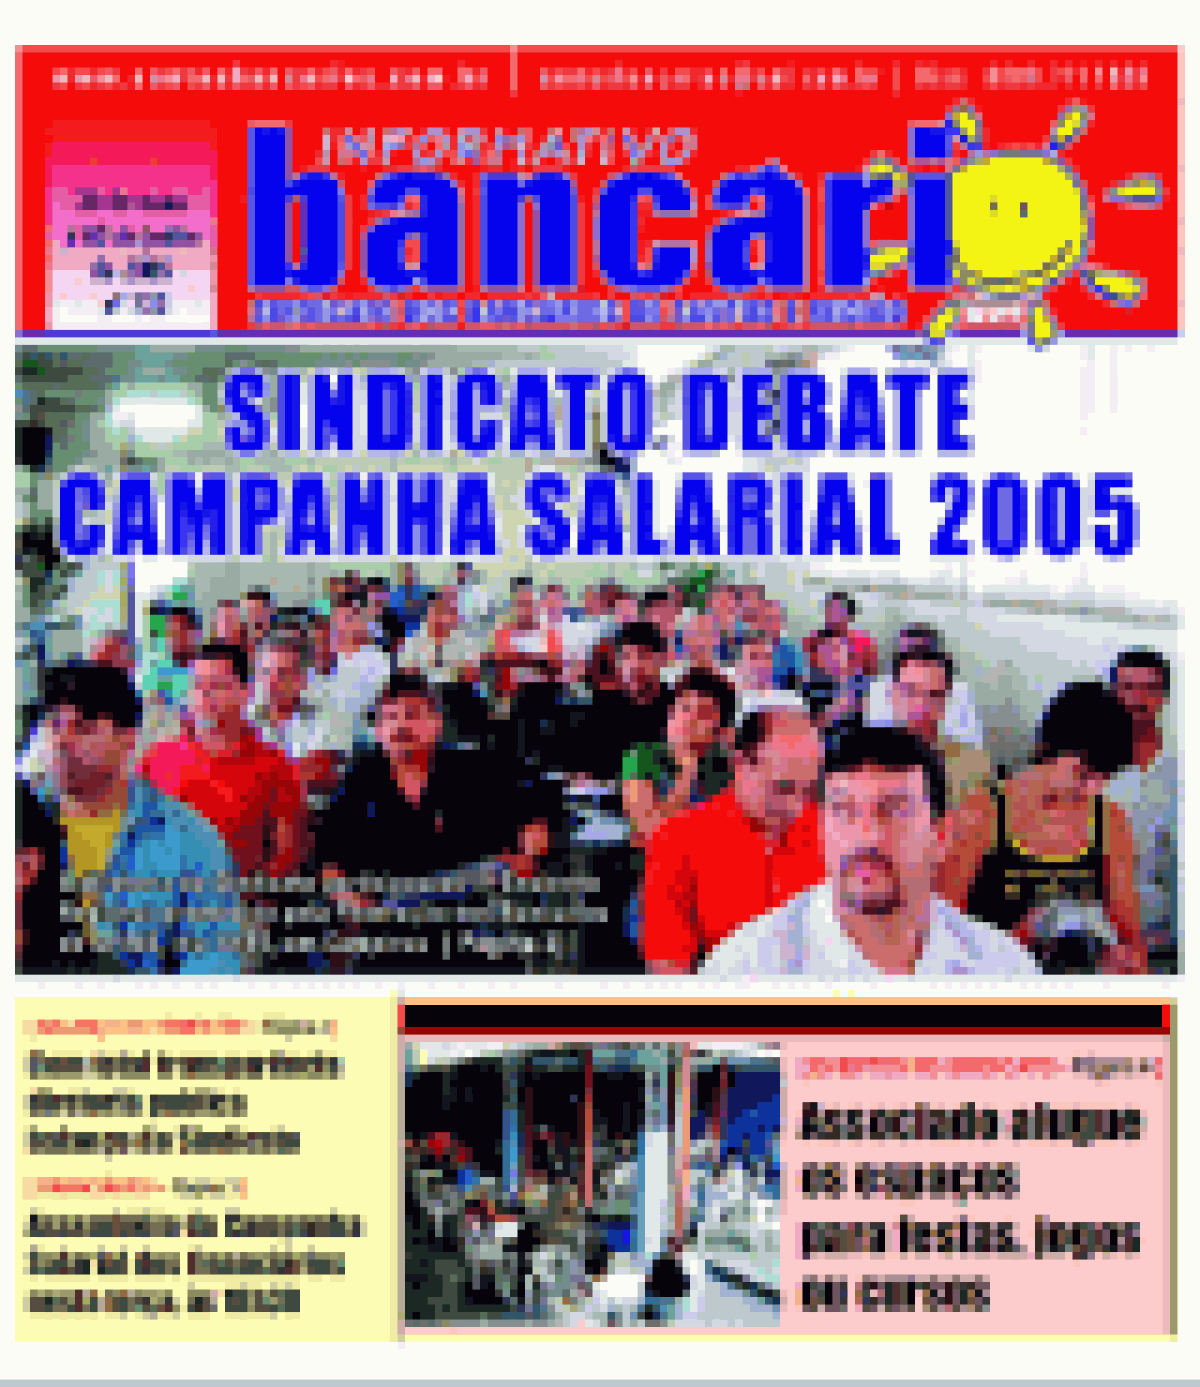 Sindicato debate campanha salarial 2005